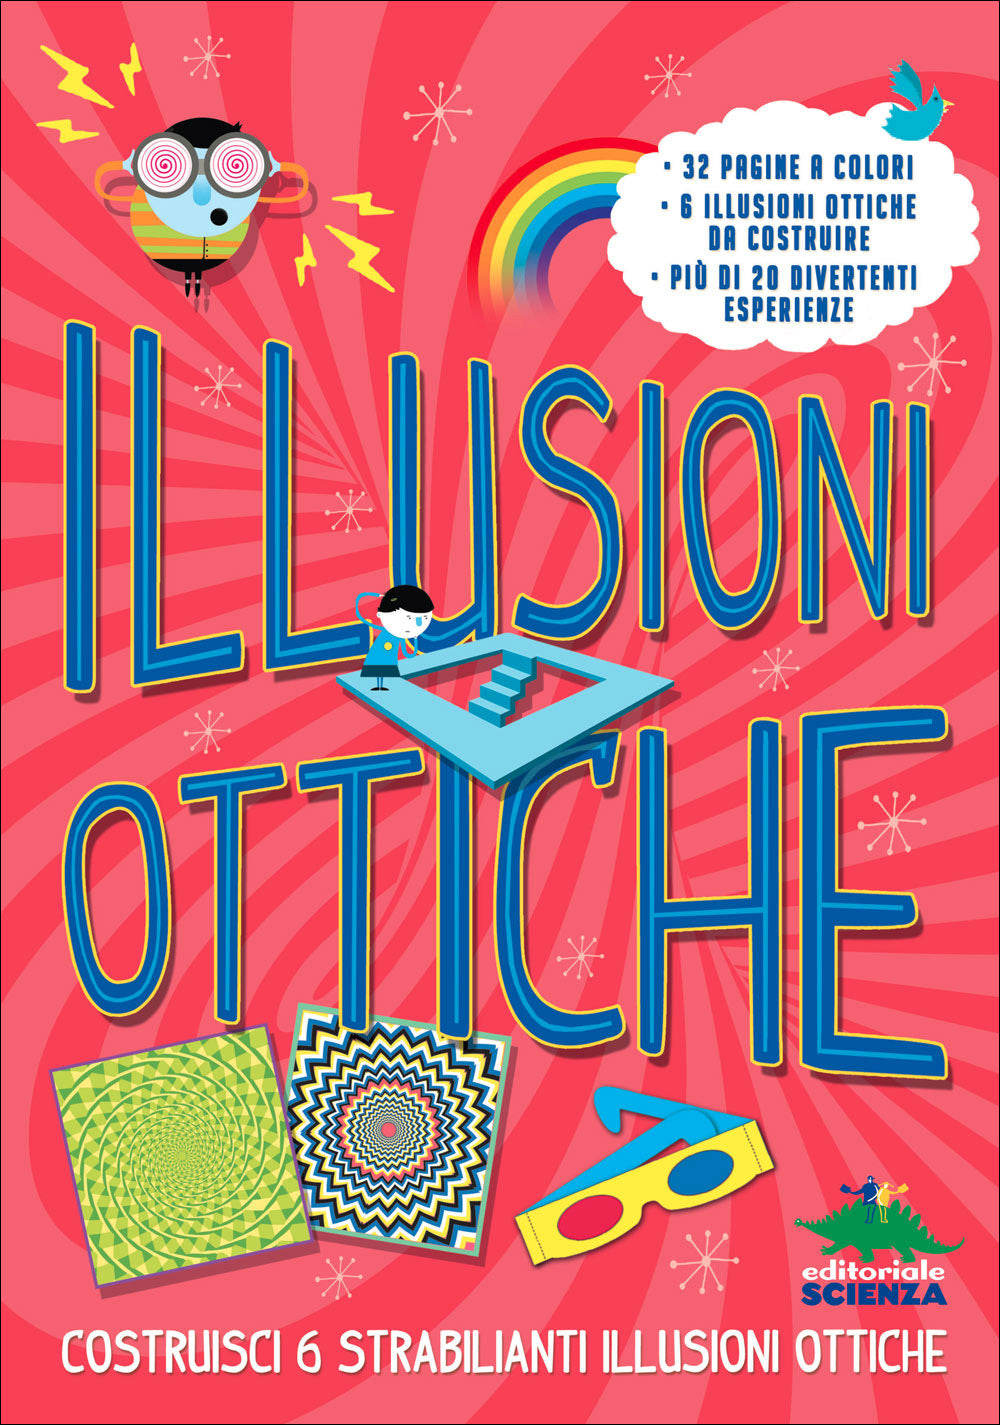 Illusioni ottiche::Costruisci 6 strabilianti illusioni ottiche - 32 pagine a colori, 6 illusioni ottiche da costruire, più di 20 divertenti esperienze